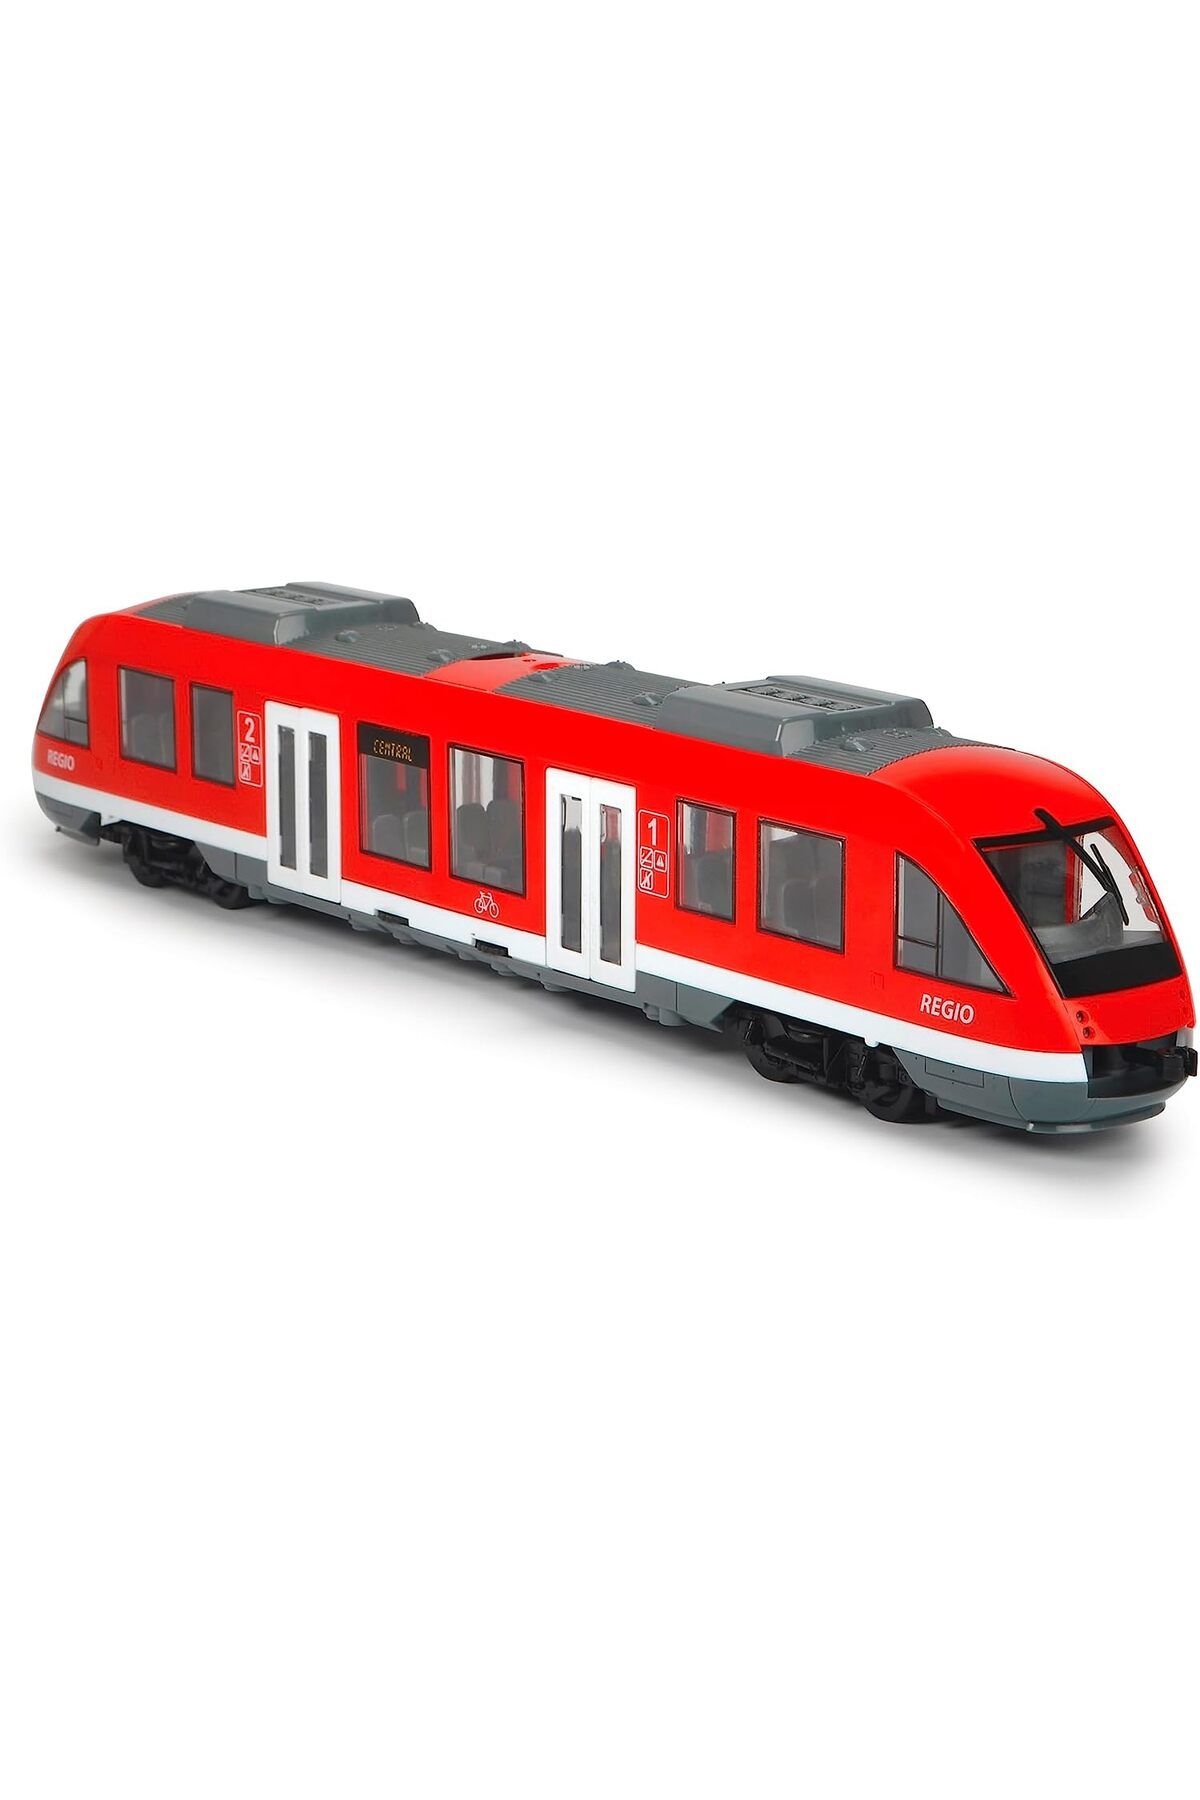 Genel Markalar , 203748002, Oyuncak Şehir Treni, 45 Cm, 1:43, Serbest Tekerlekler, City Train